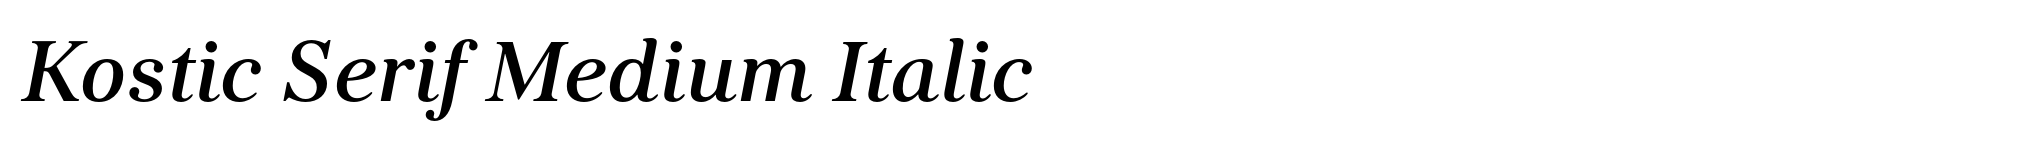 Kostic Serif Medium Italic image